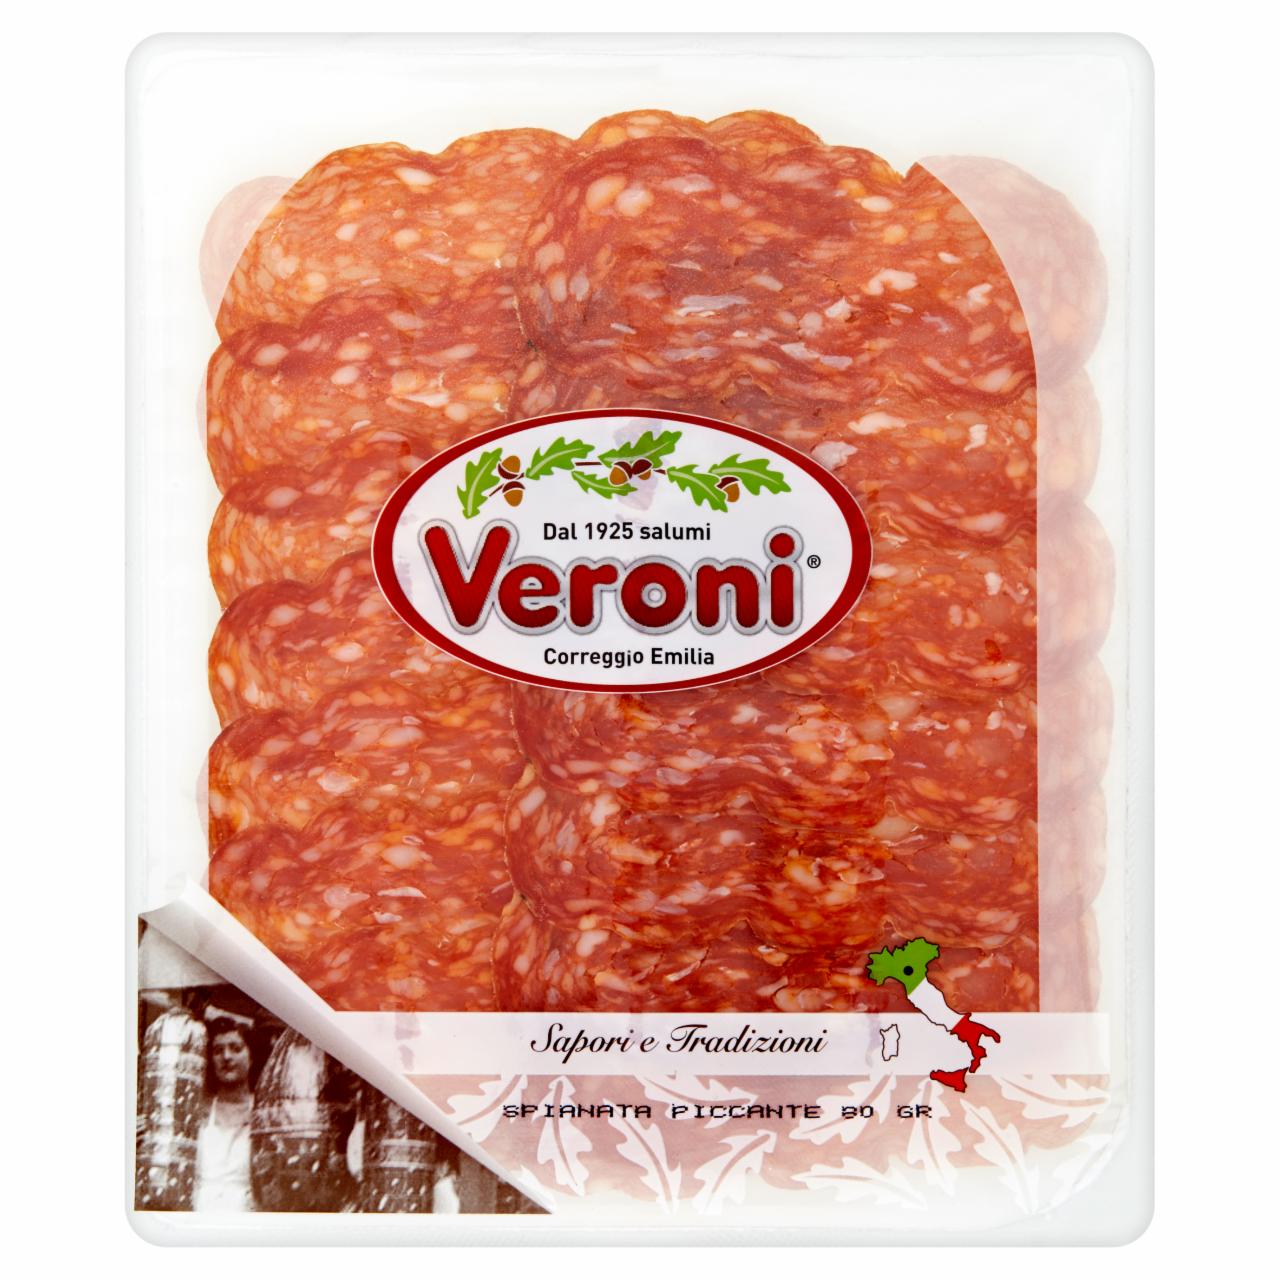 Photo - Veroni Spianata Piccante Sliced Salami 80 g